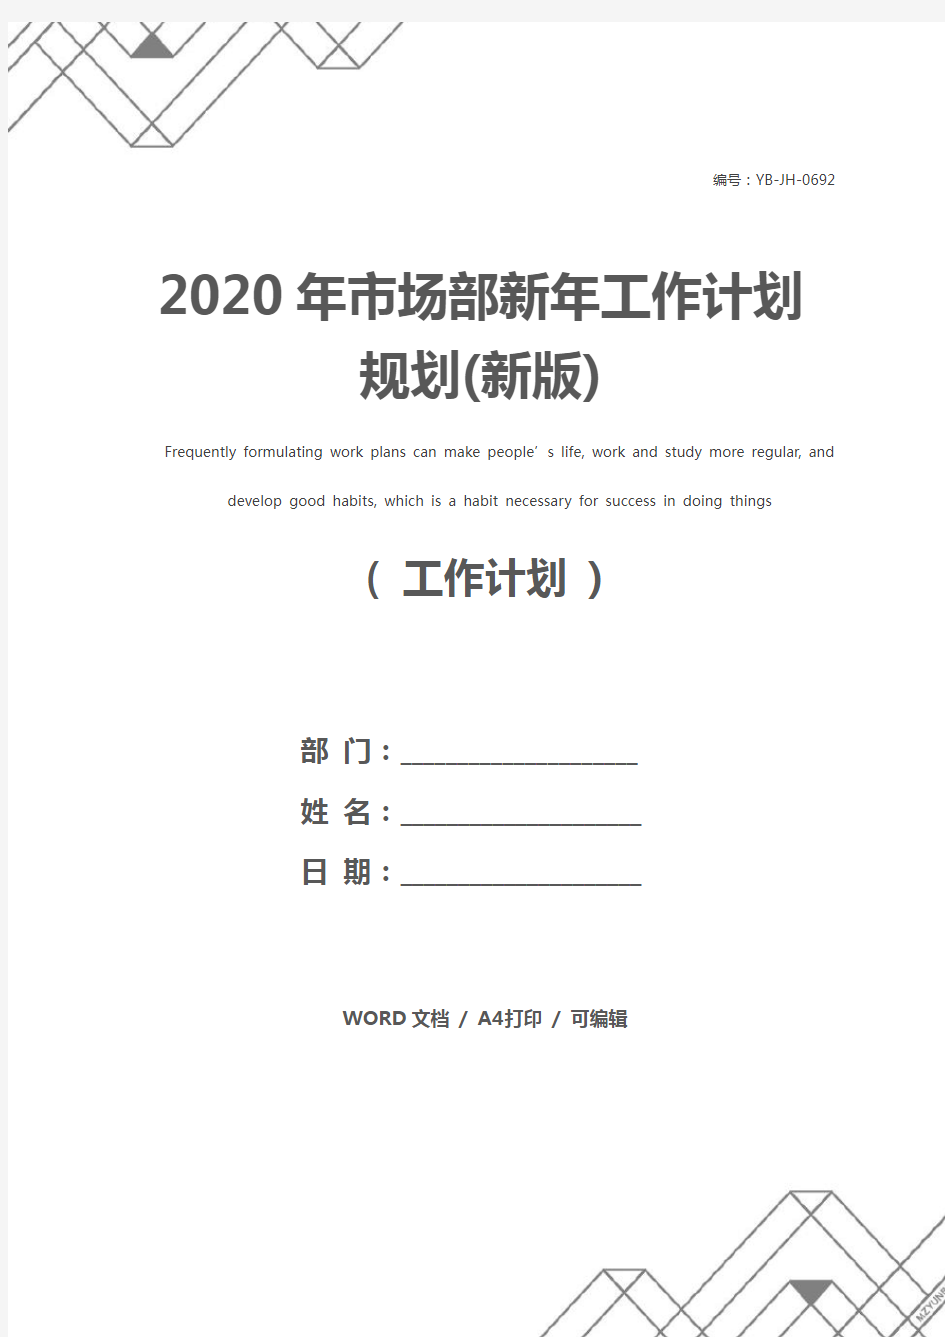 2020年市场部新年工作计划规划(新版)